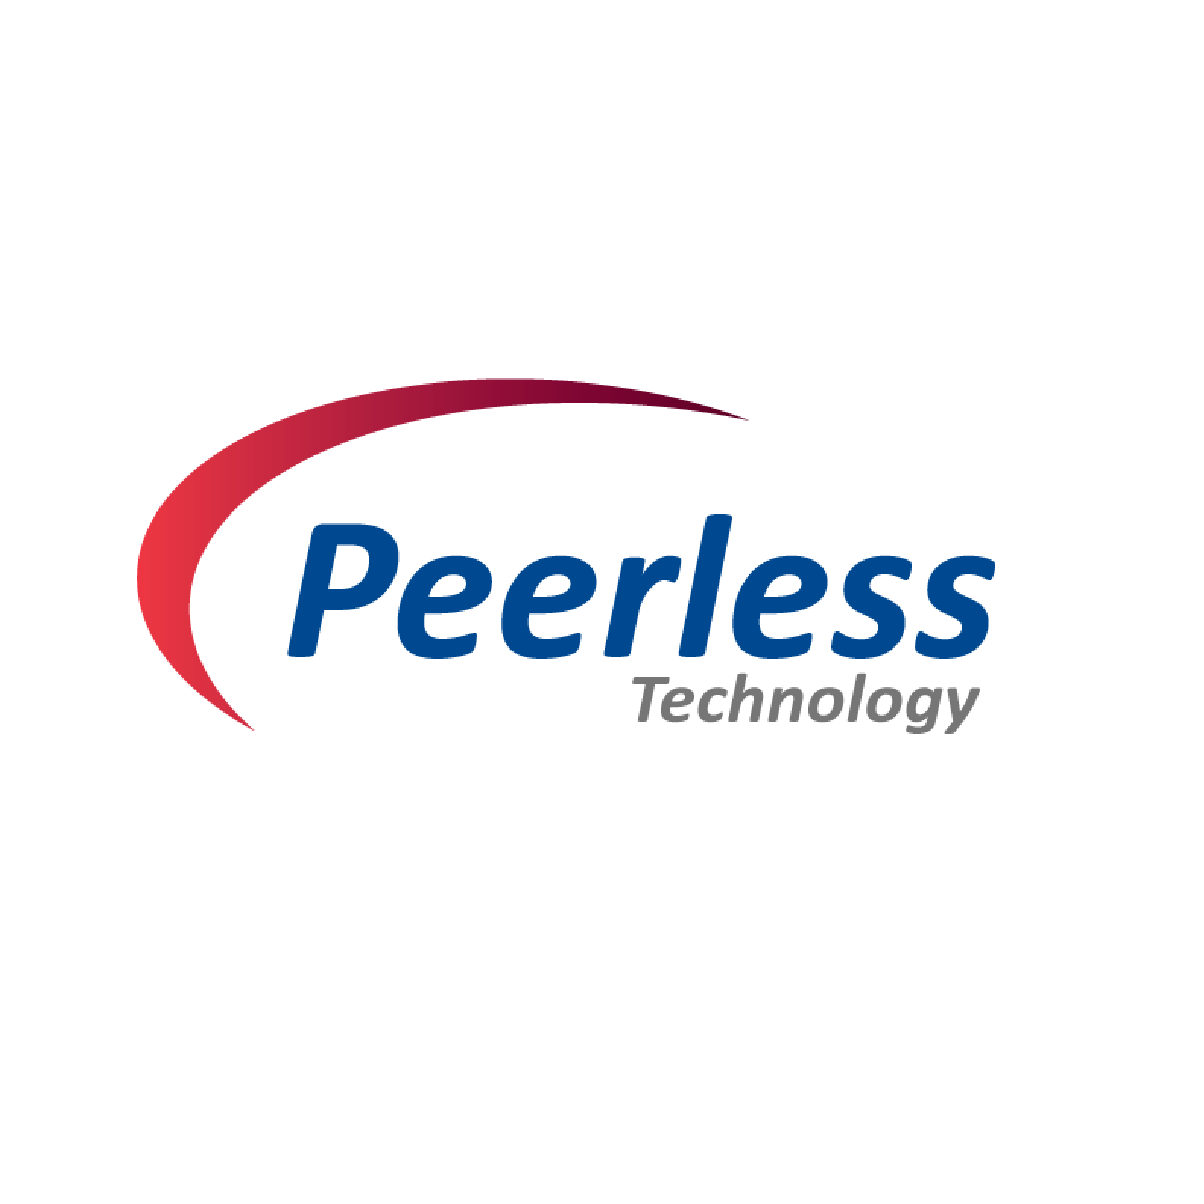 Peerless Technology